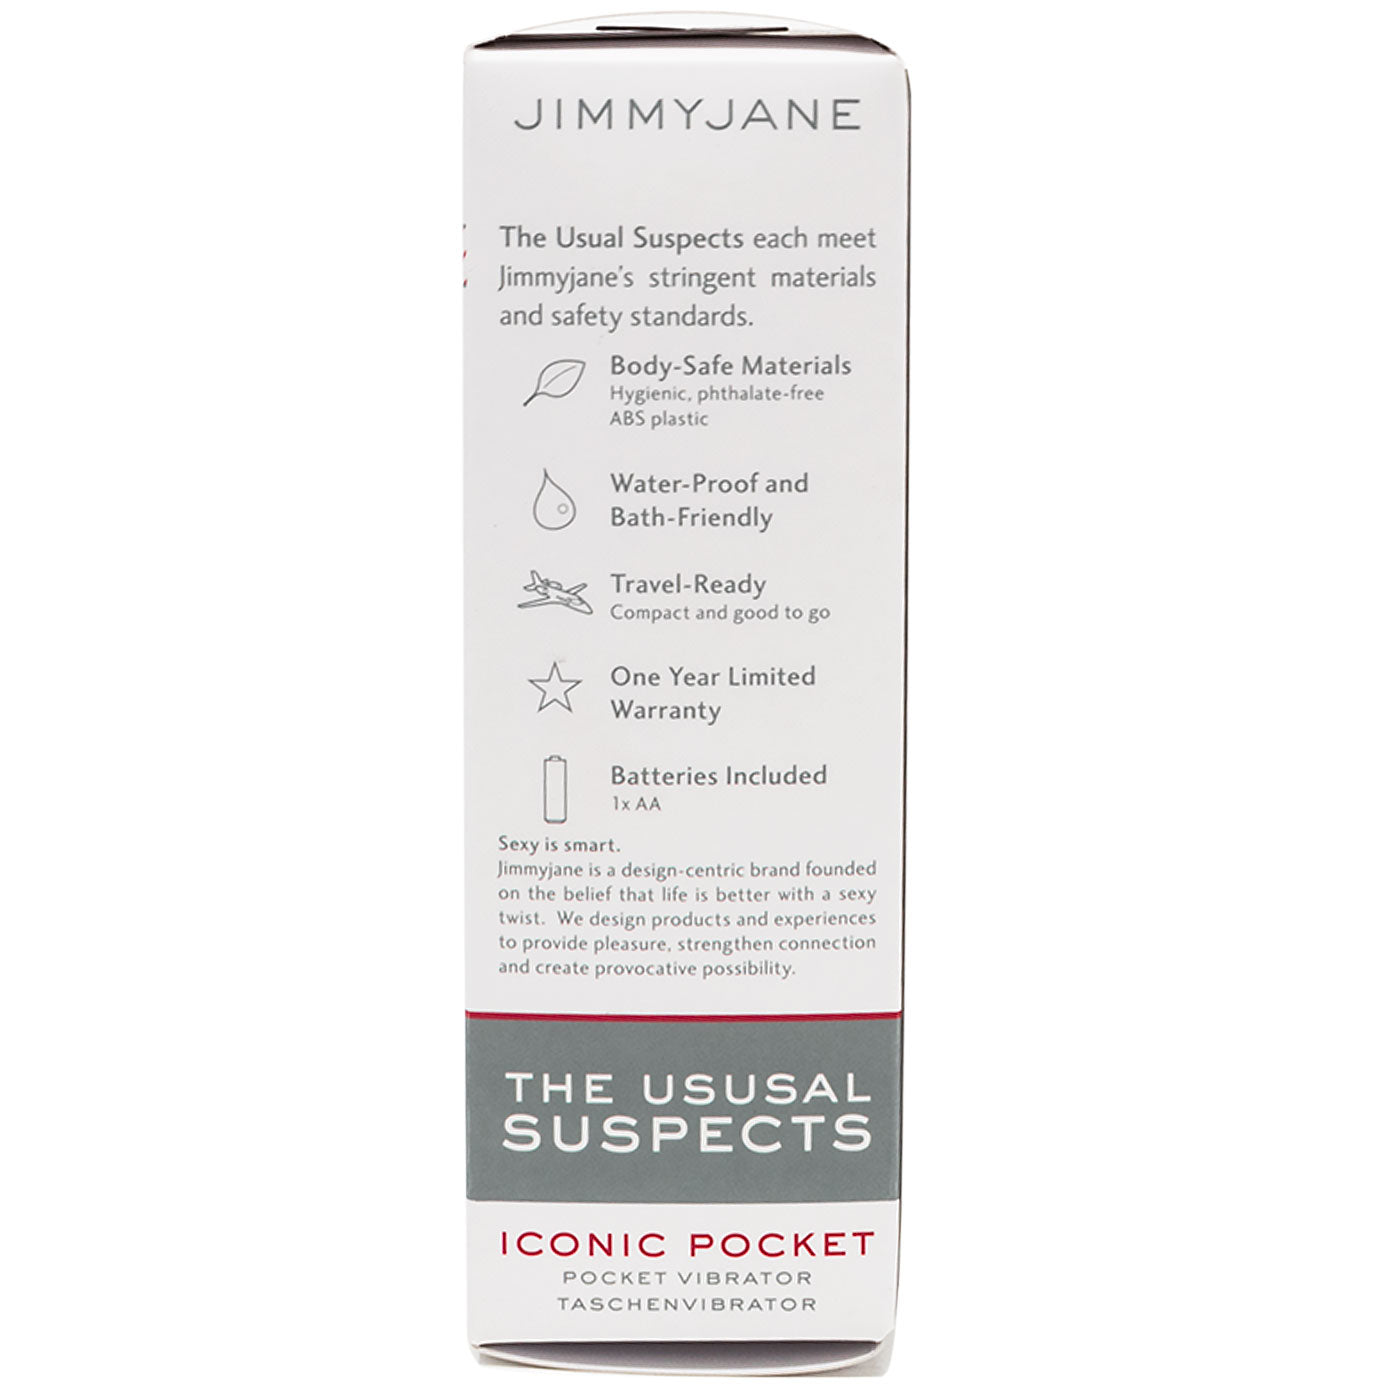 Jimmyjane Iconic Pocket Vibrator